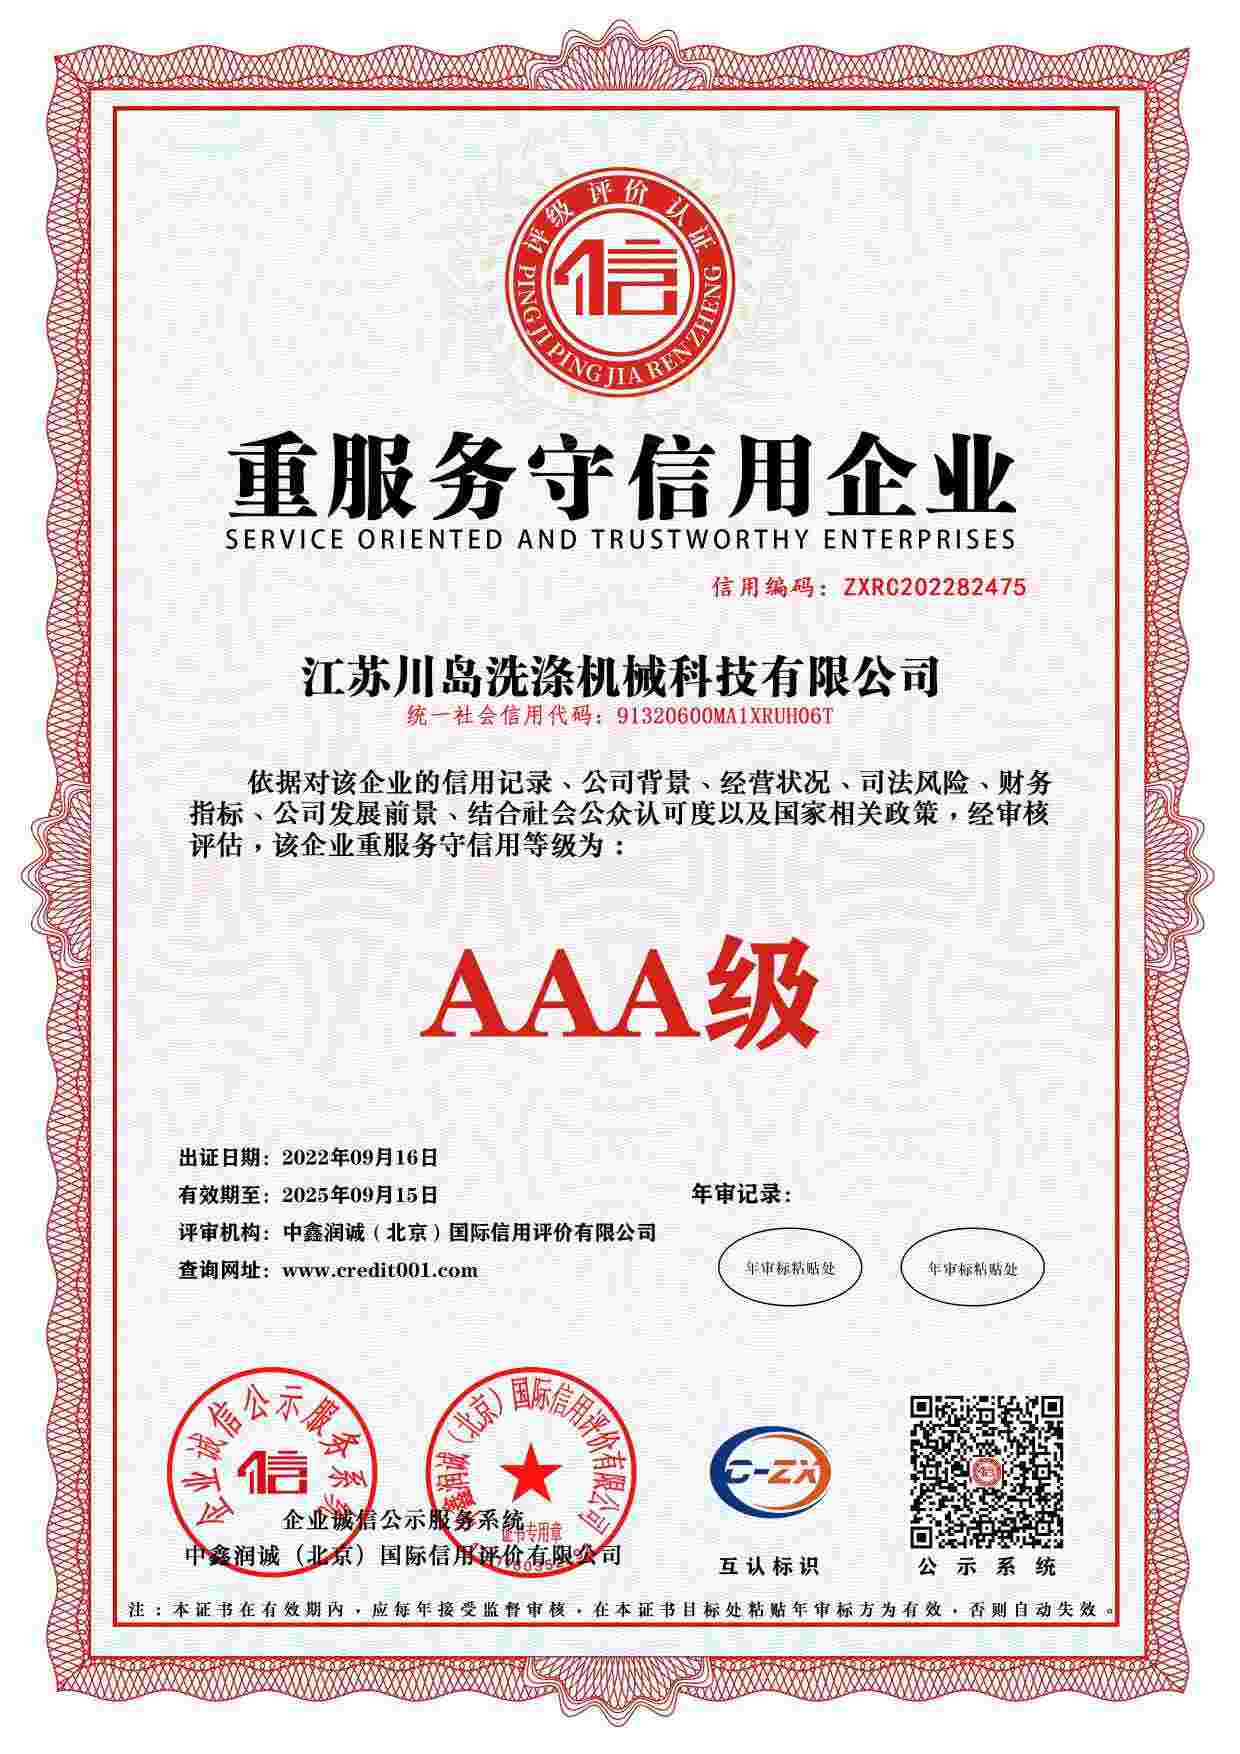 Enterprise credit rating certificate (4)